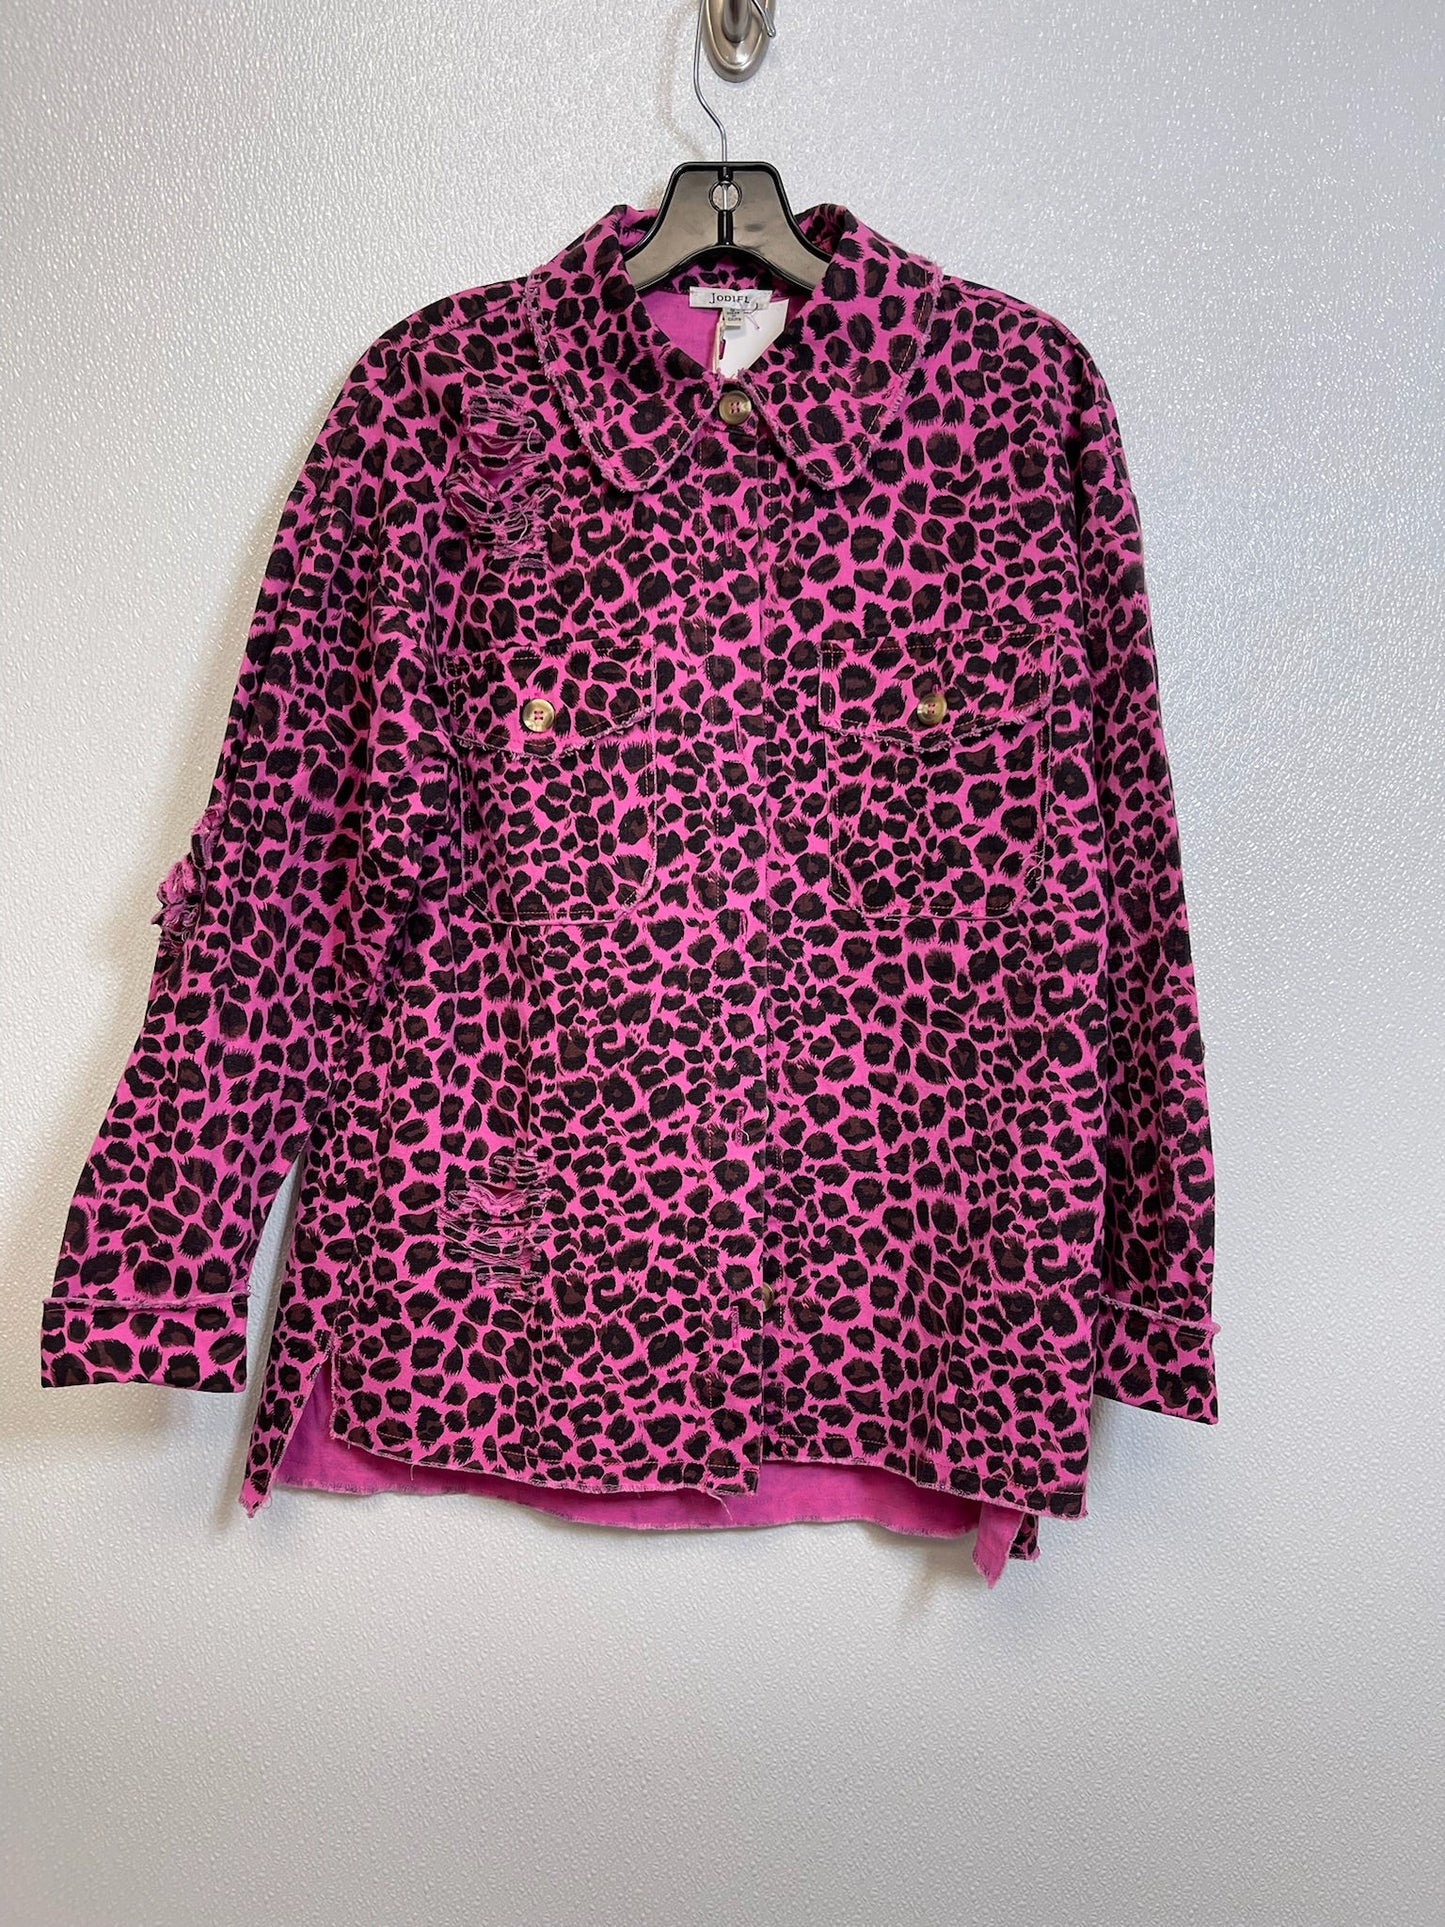 Leopard Print Jacket Denim Jodifl, Size S